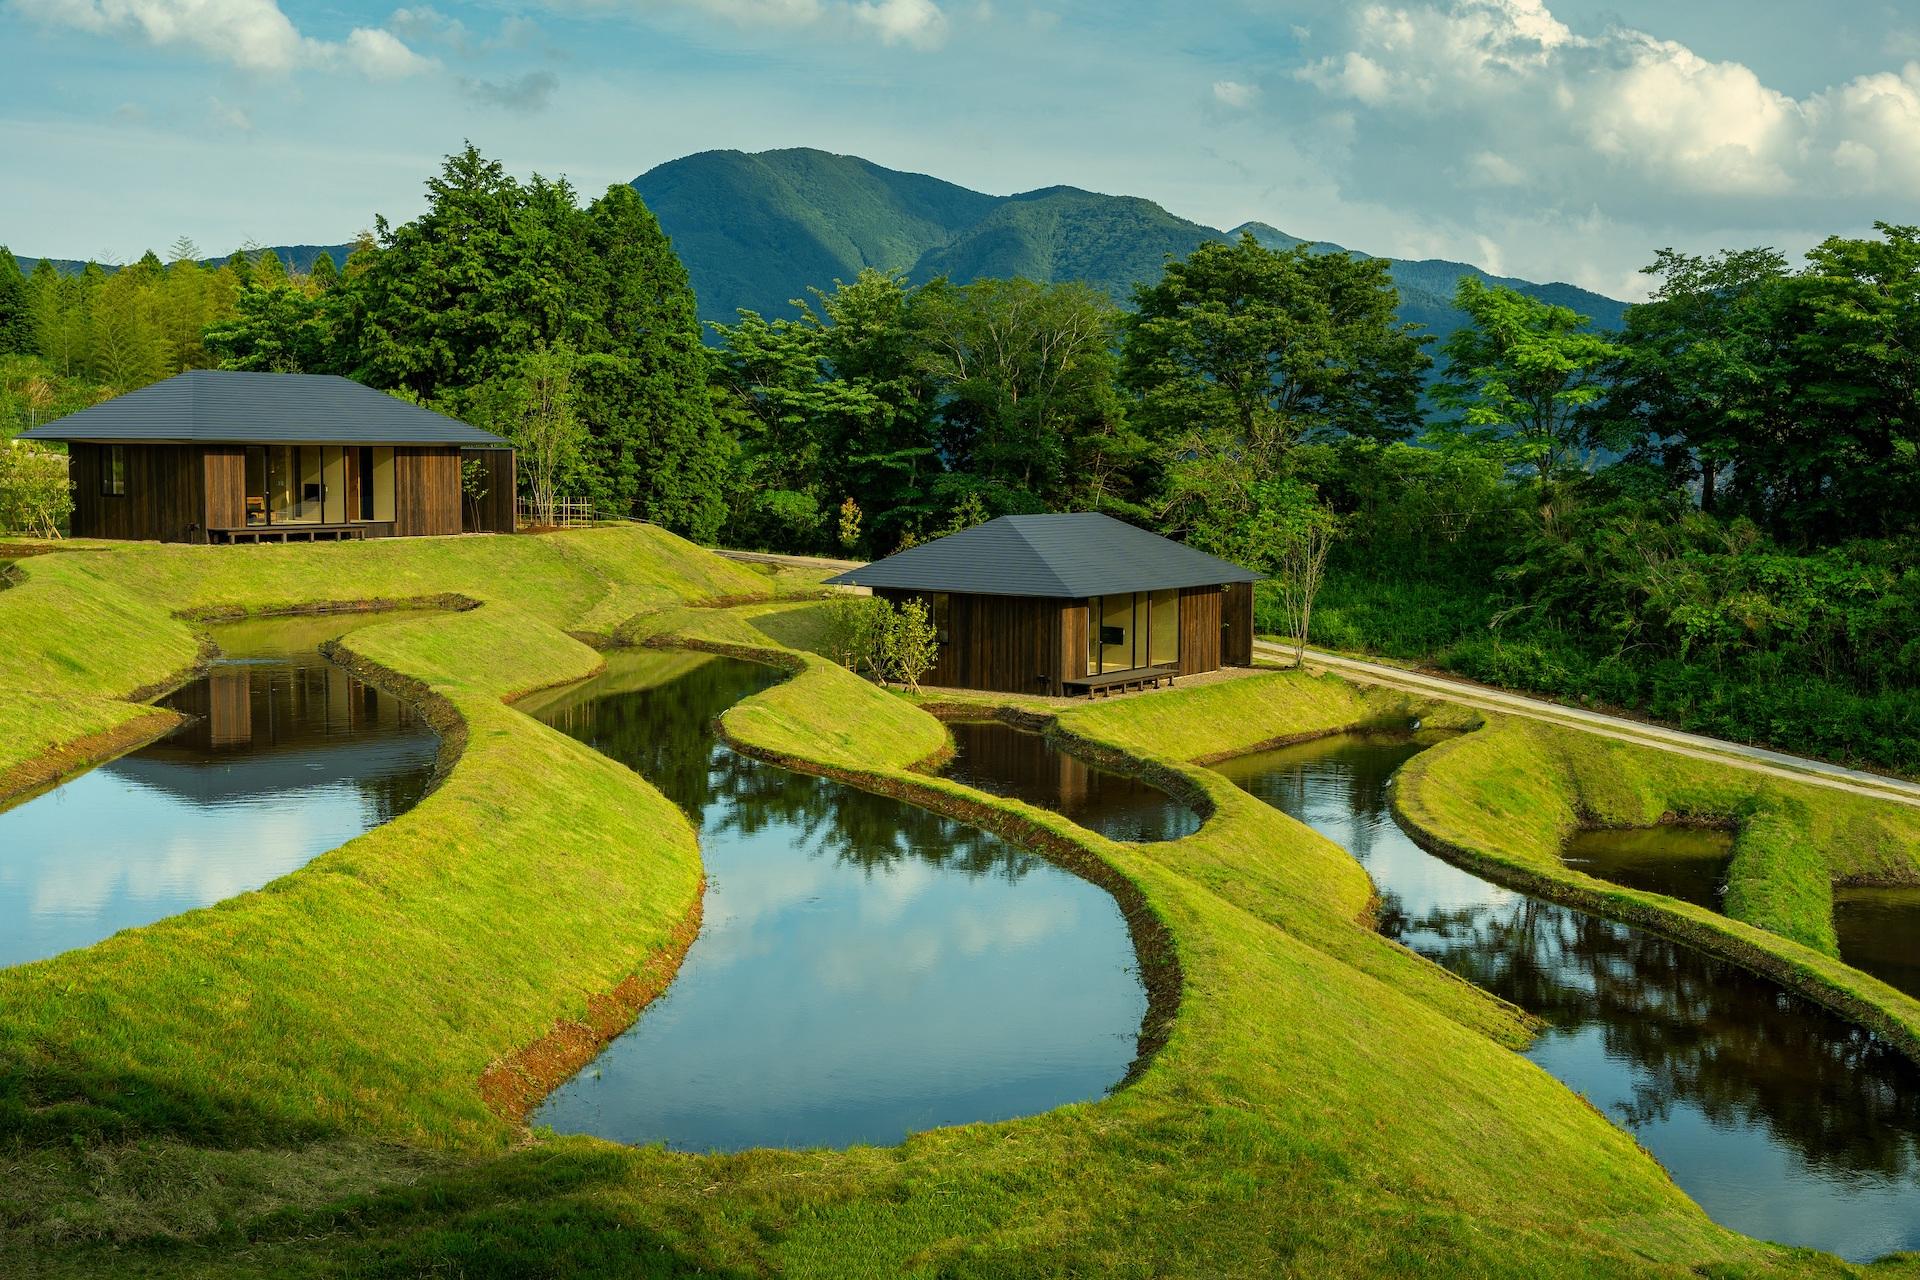 被遍地的梯田綠意圍繞！貼近大自然的日本九州溫泉旅館